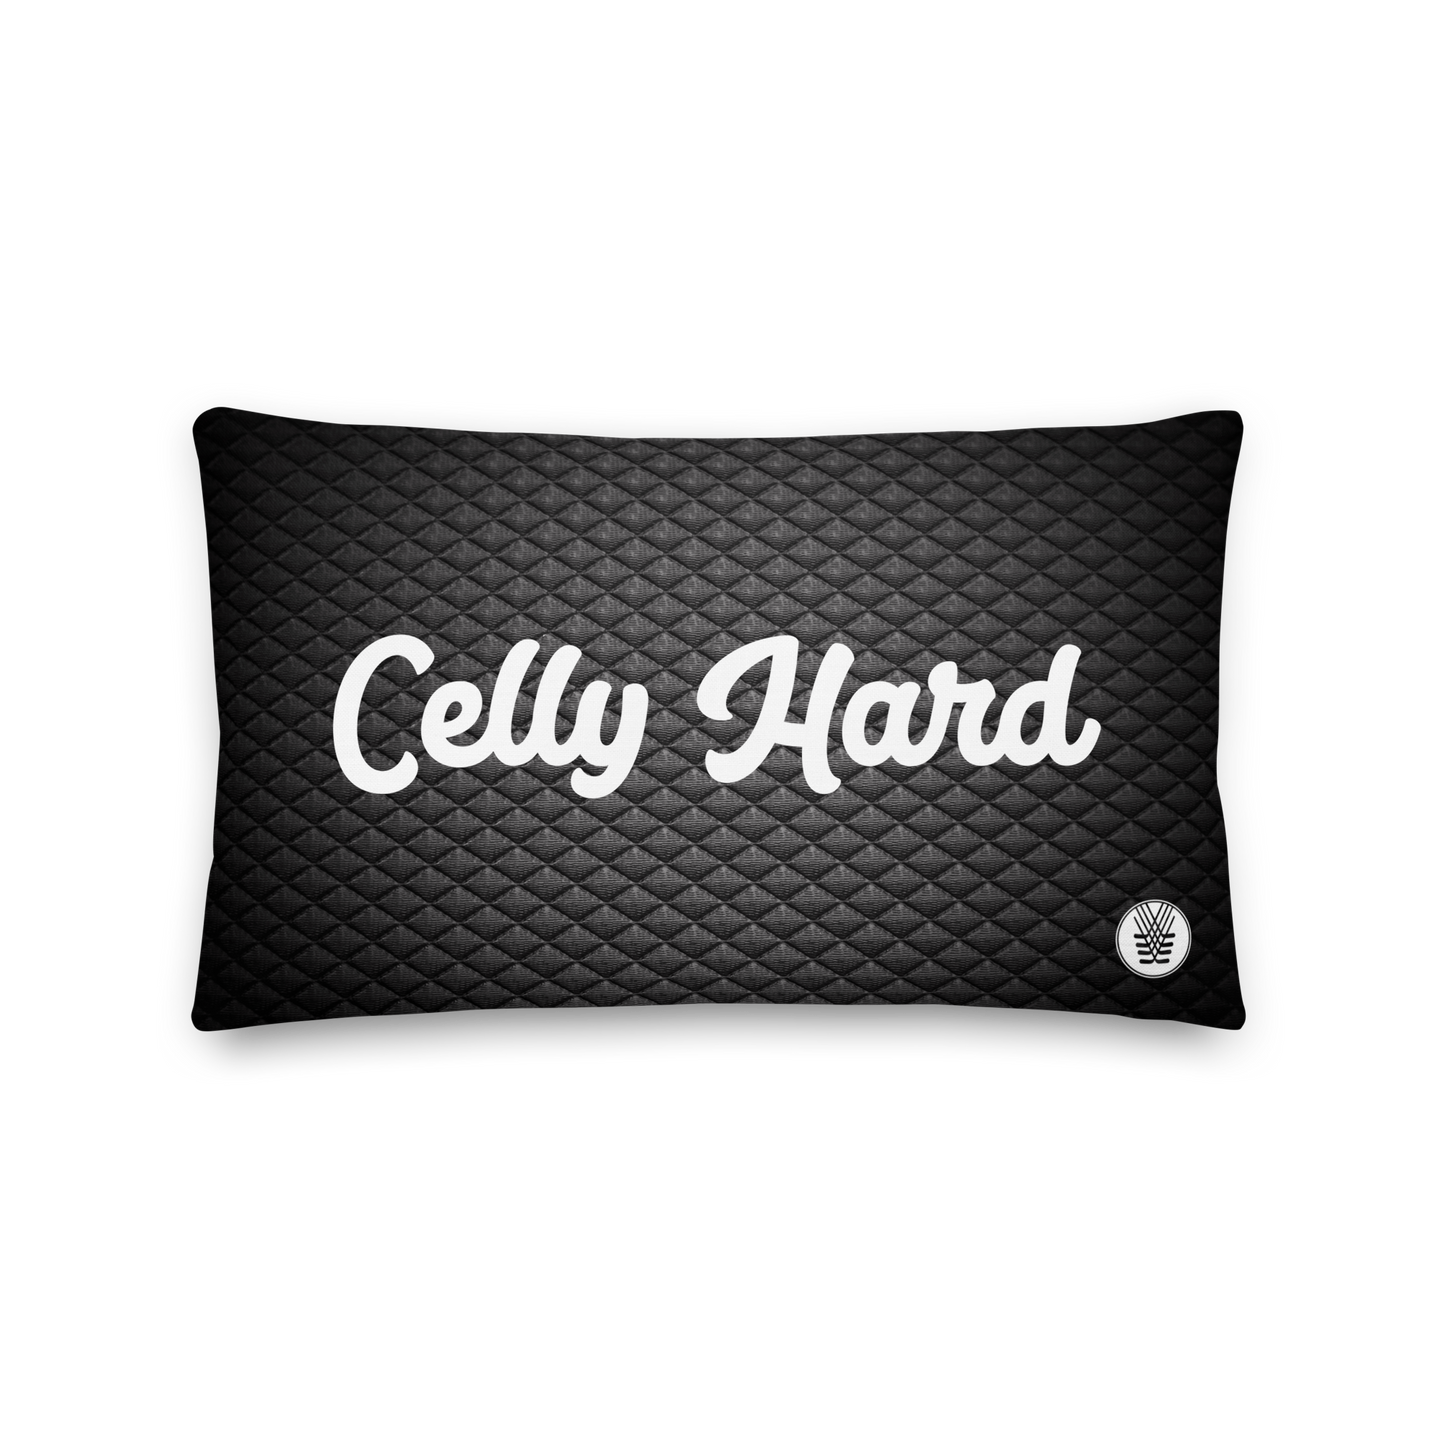 Celly Hard Pillows